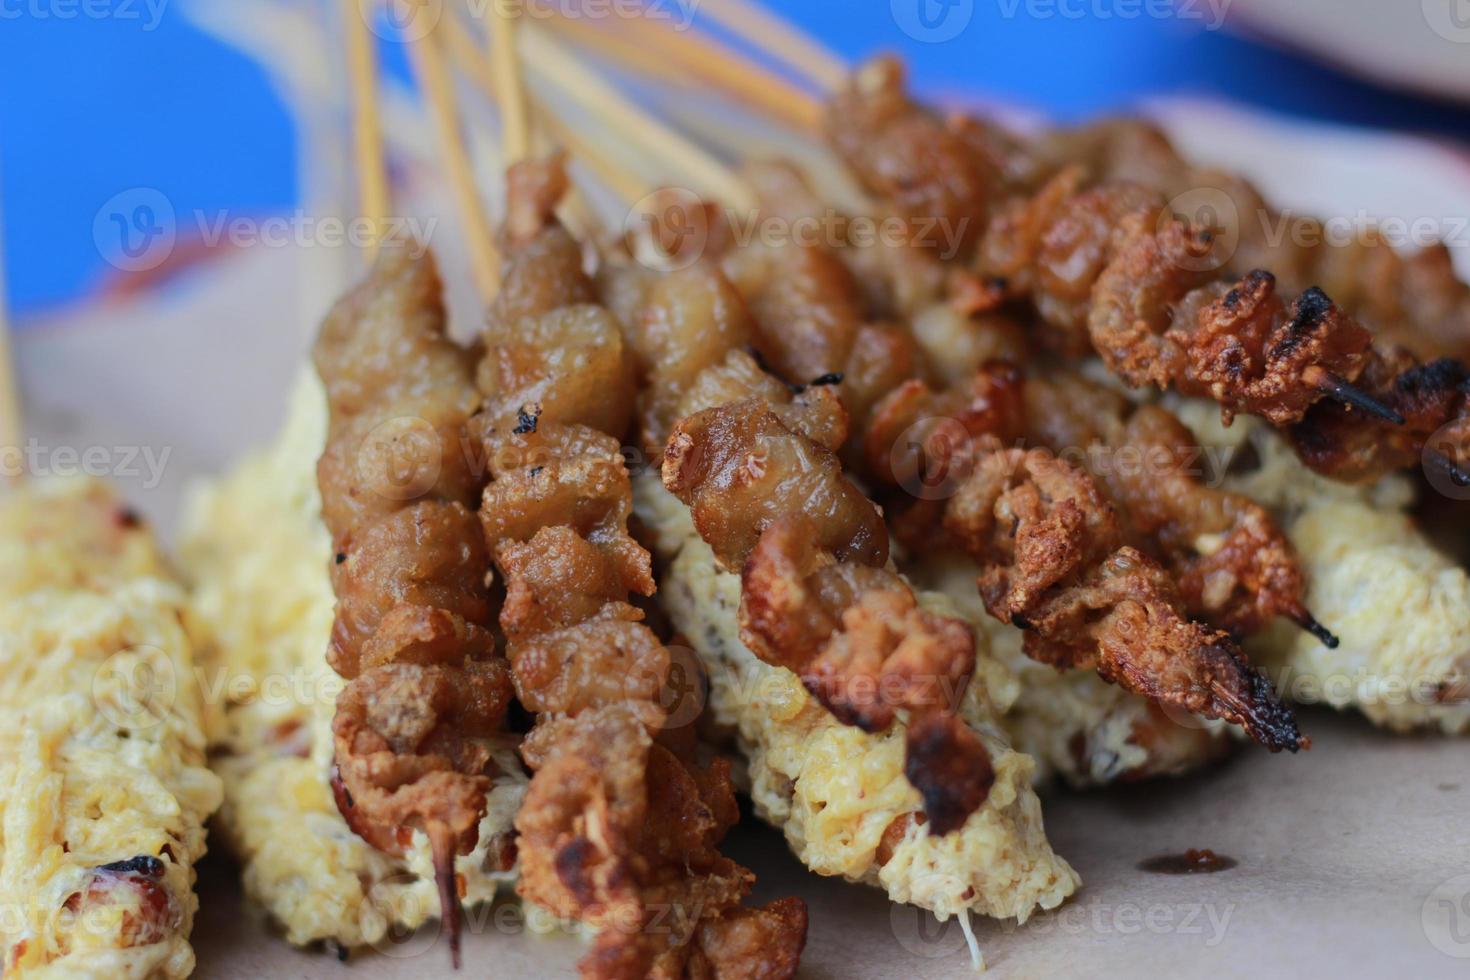 foto do frango satay revestido com frito ovo e frango intestino satay servido com vermelho Pimenta molho. indonésio Comida chamado saciar taichan. Comida conceito foto.